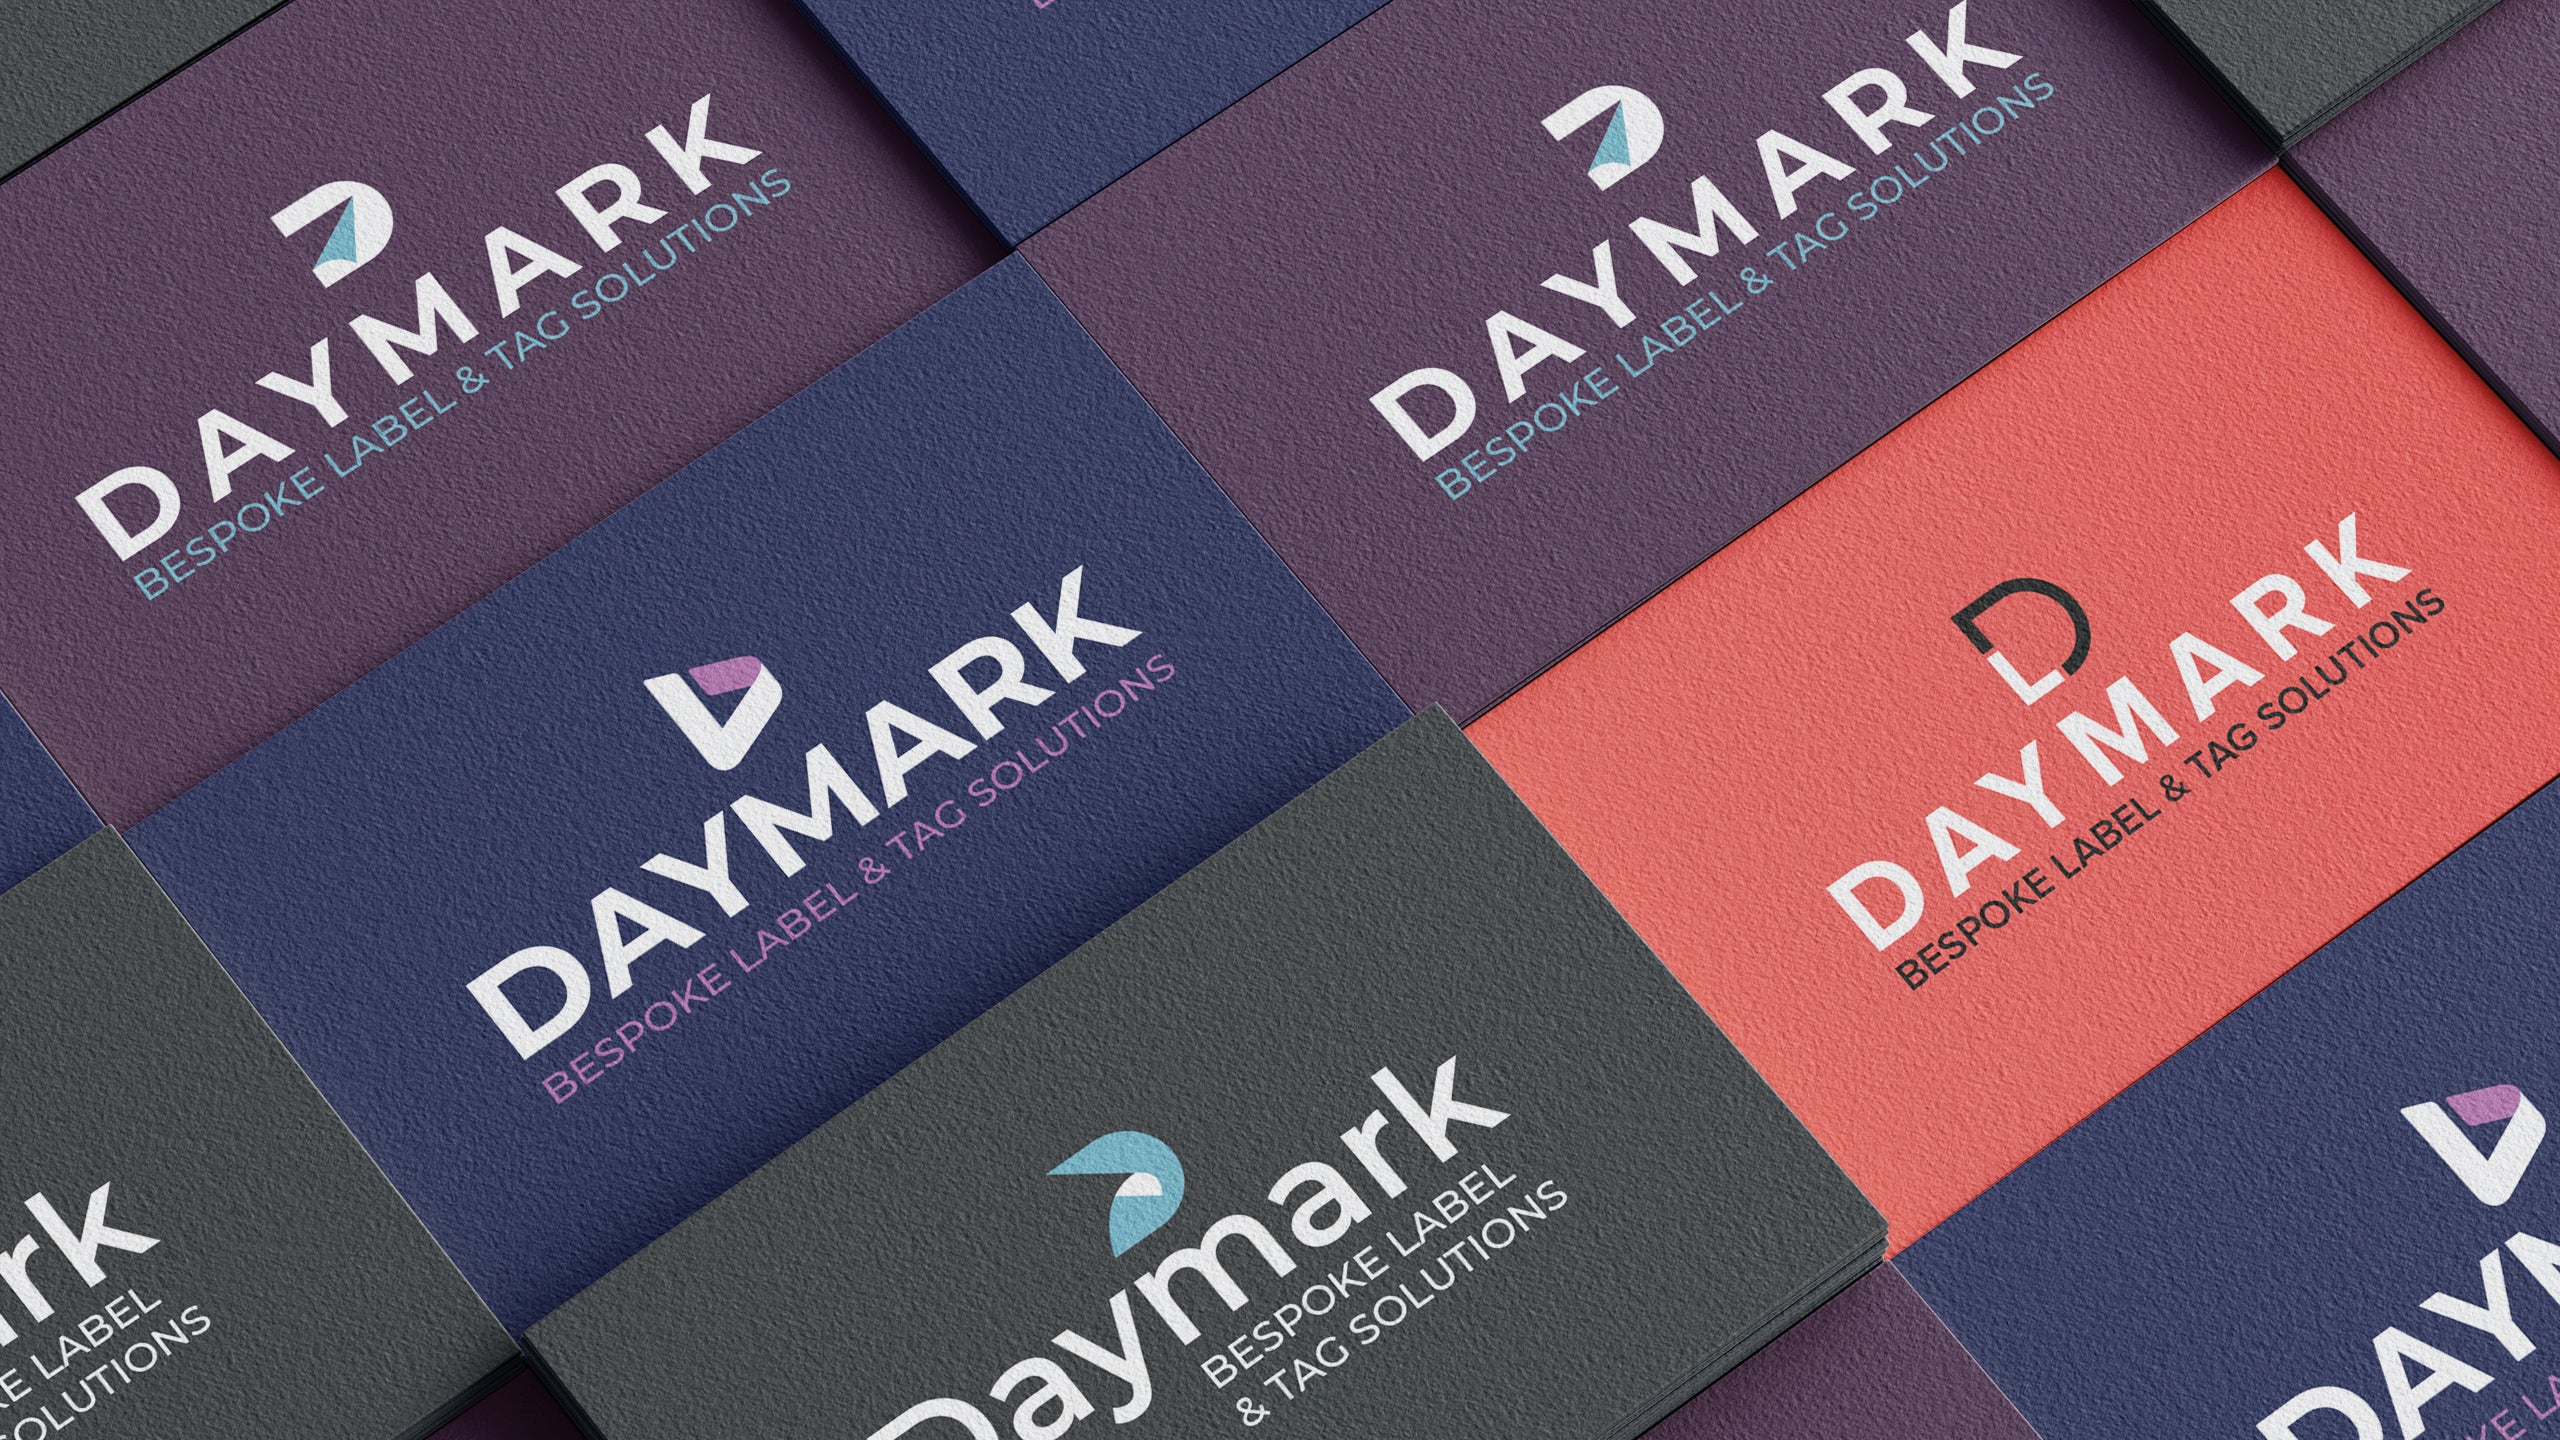 Daymark-Full-Width-Image-3